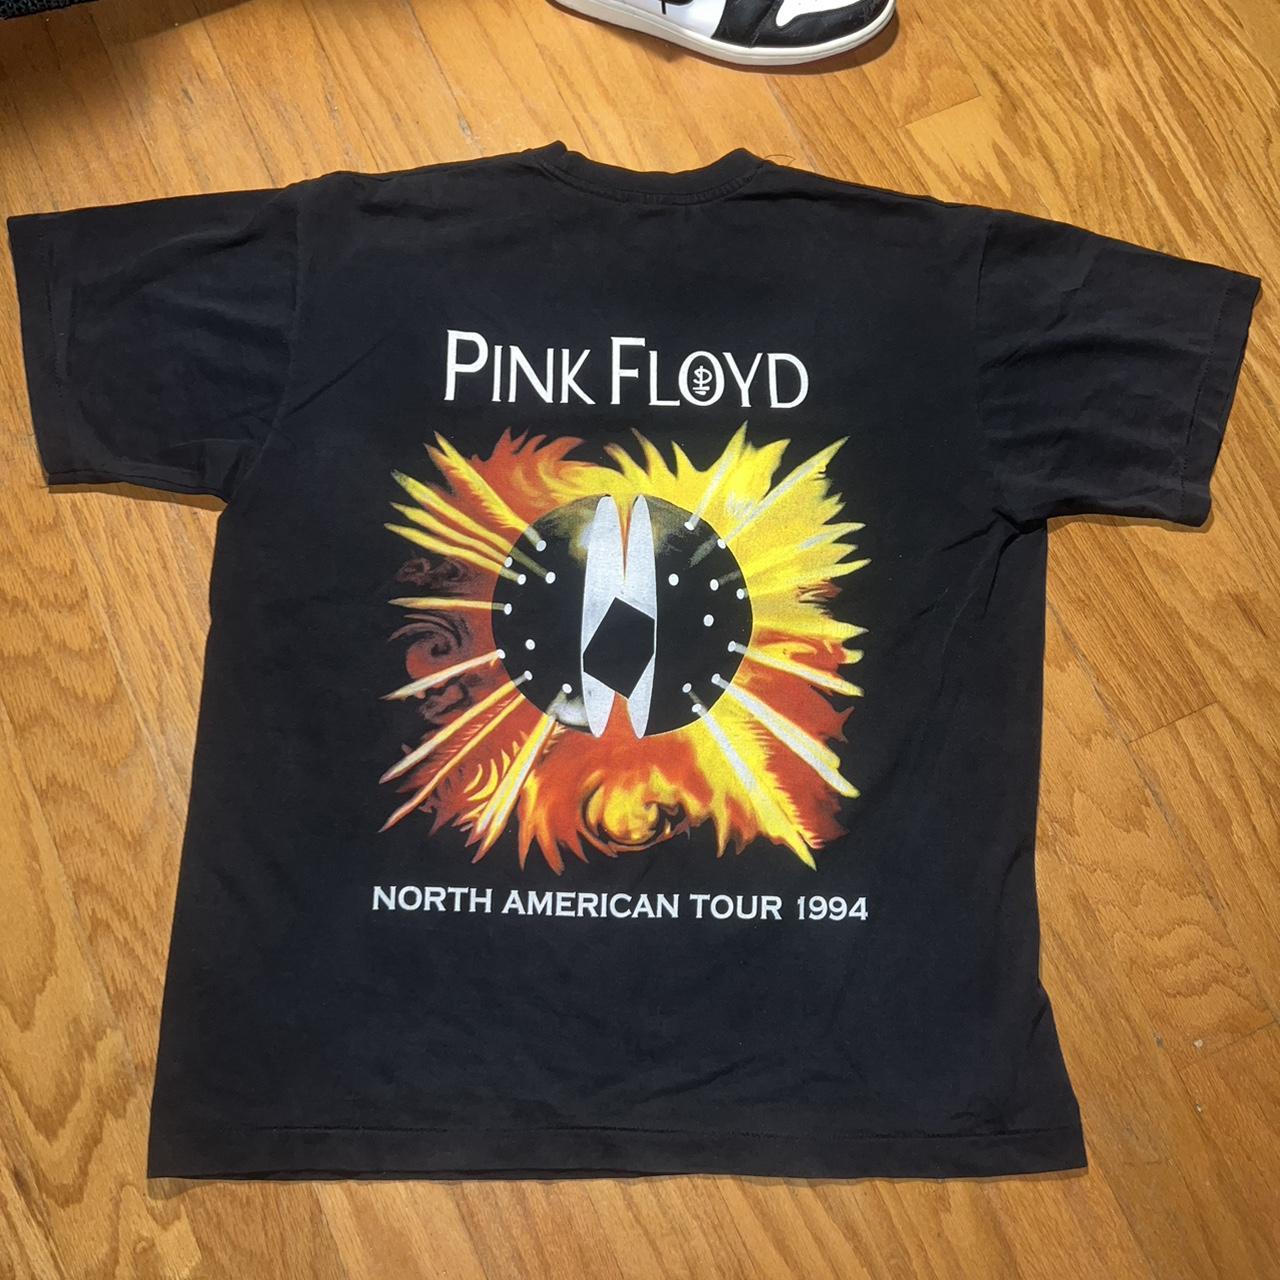 Vintage 1994 Pink Floyd “Northern American” tour... - Depop